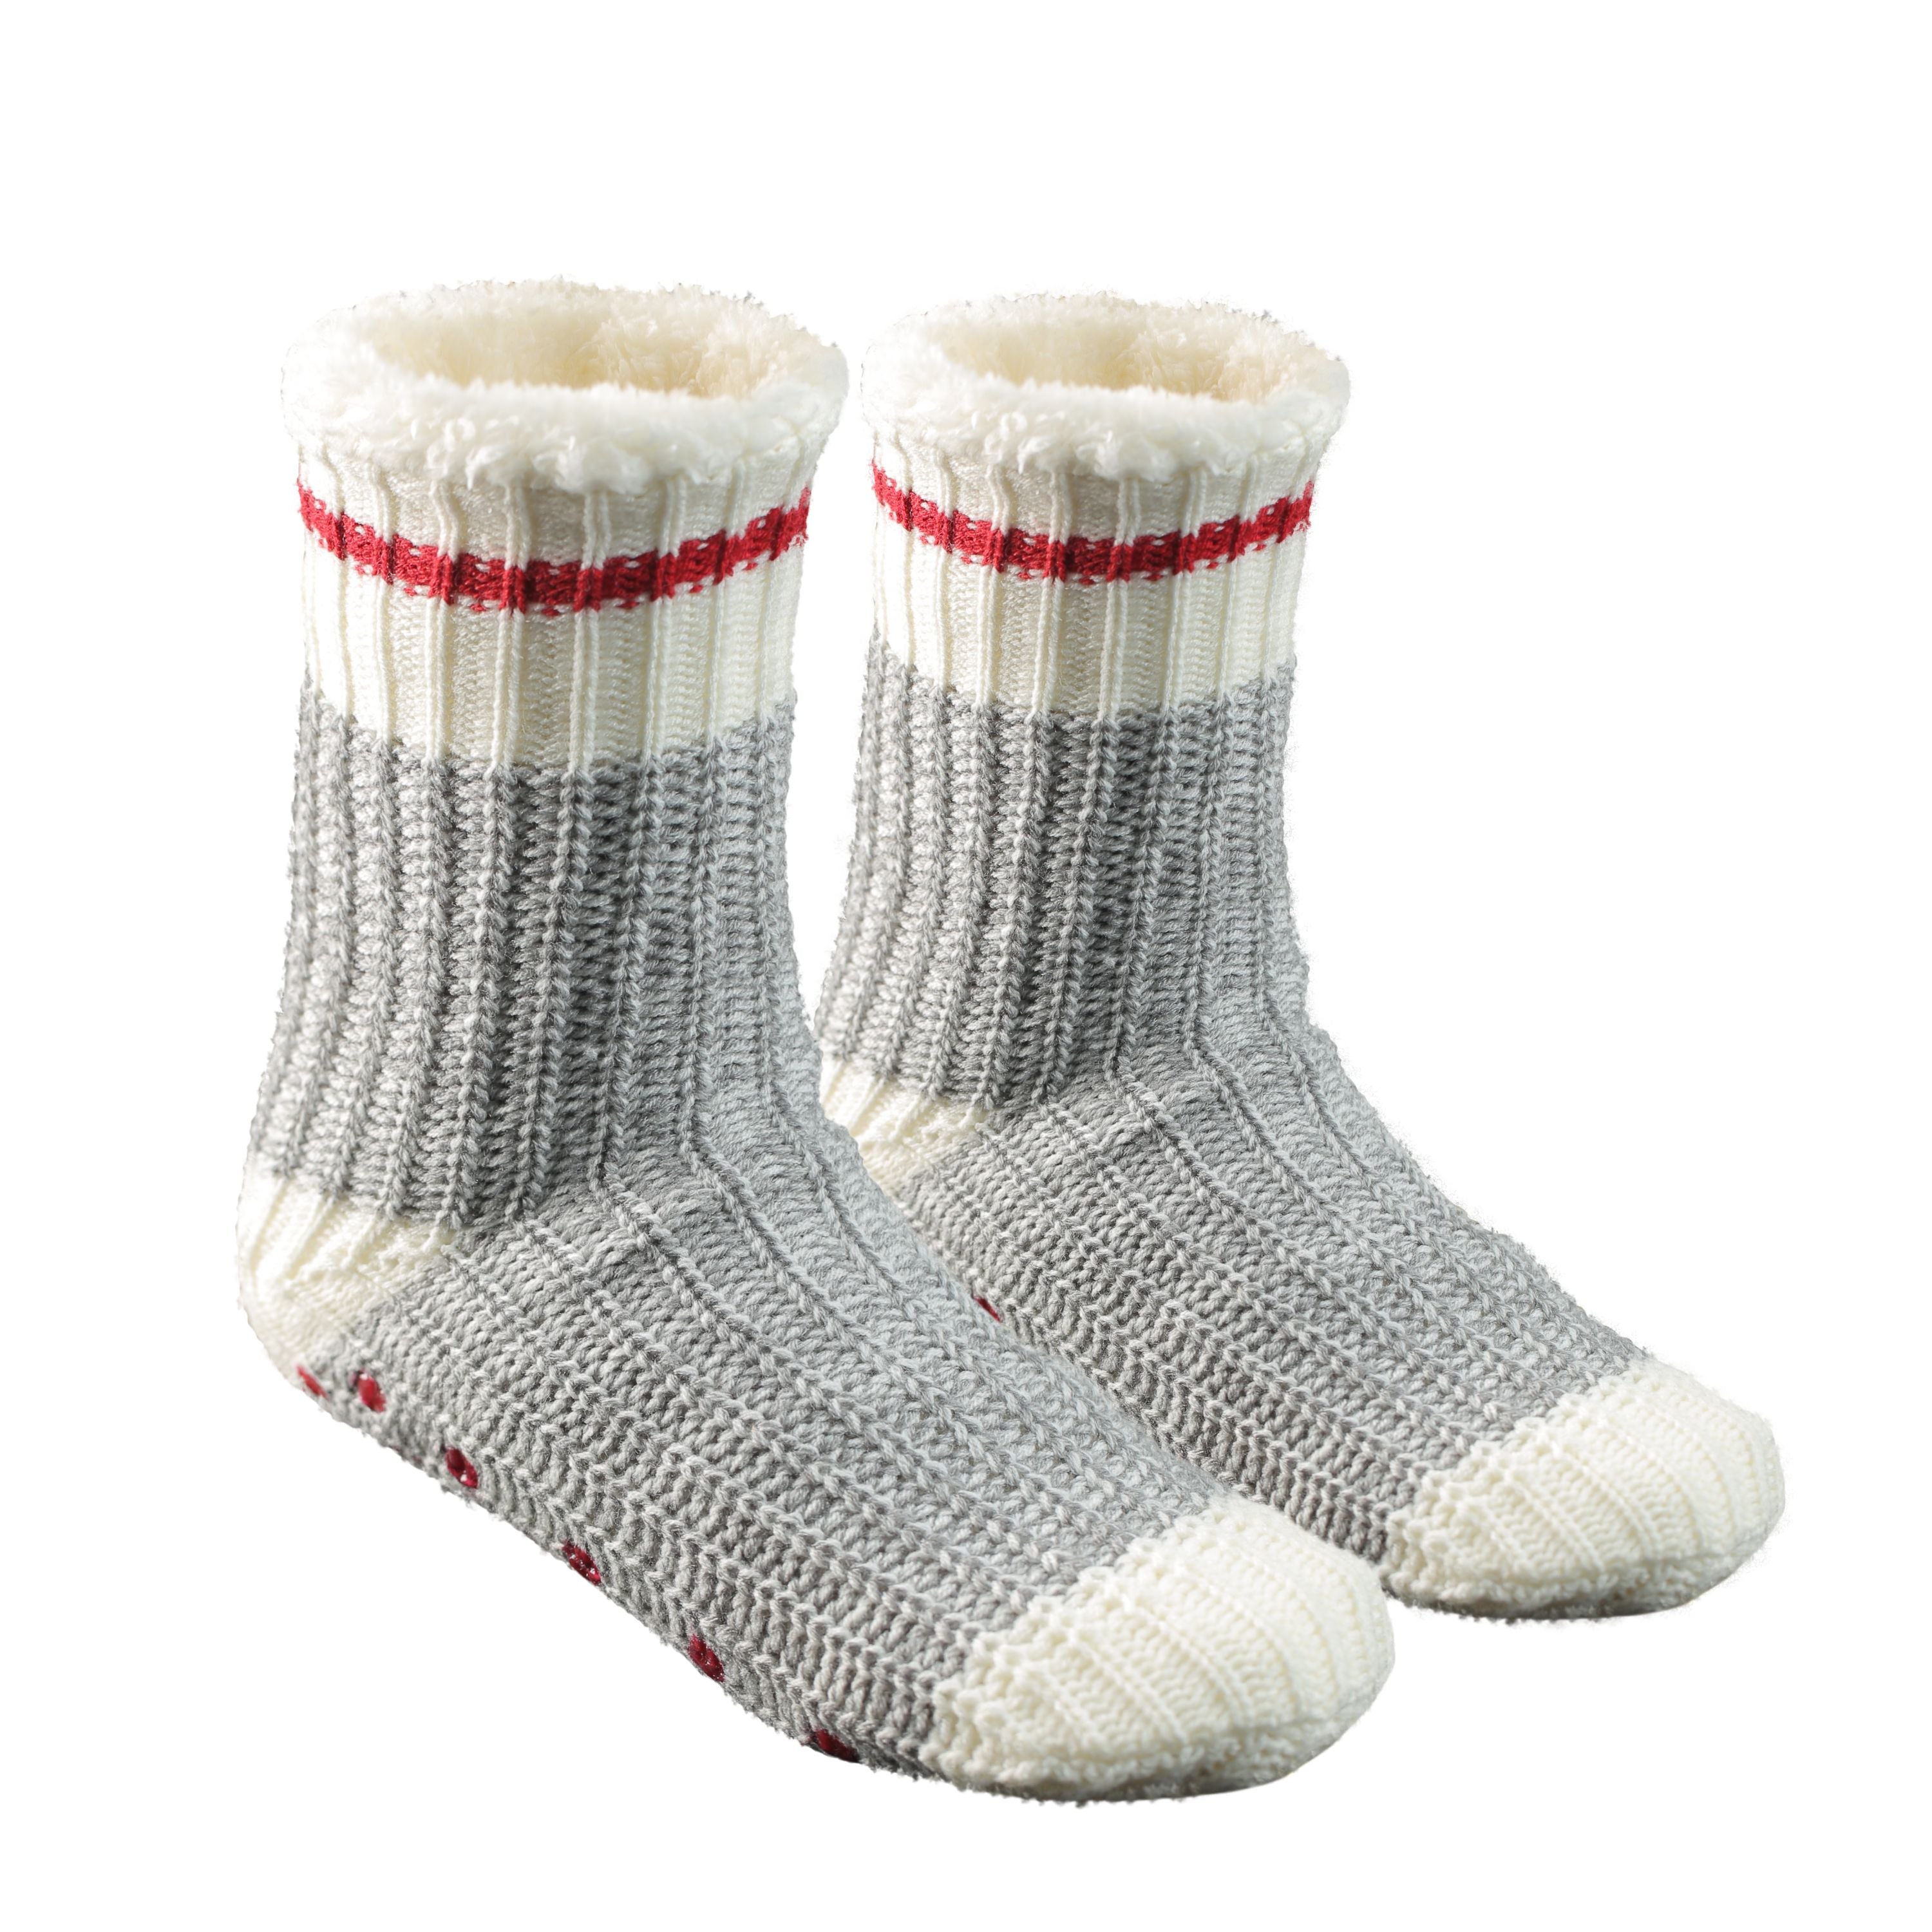 "Lucerne" slipper socks - Unisex